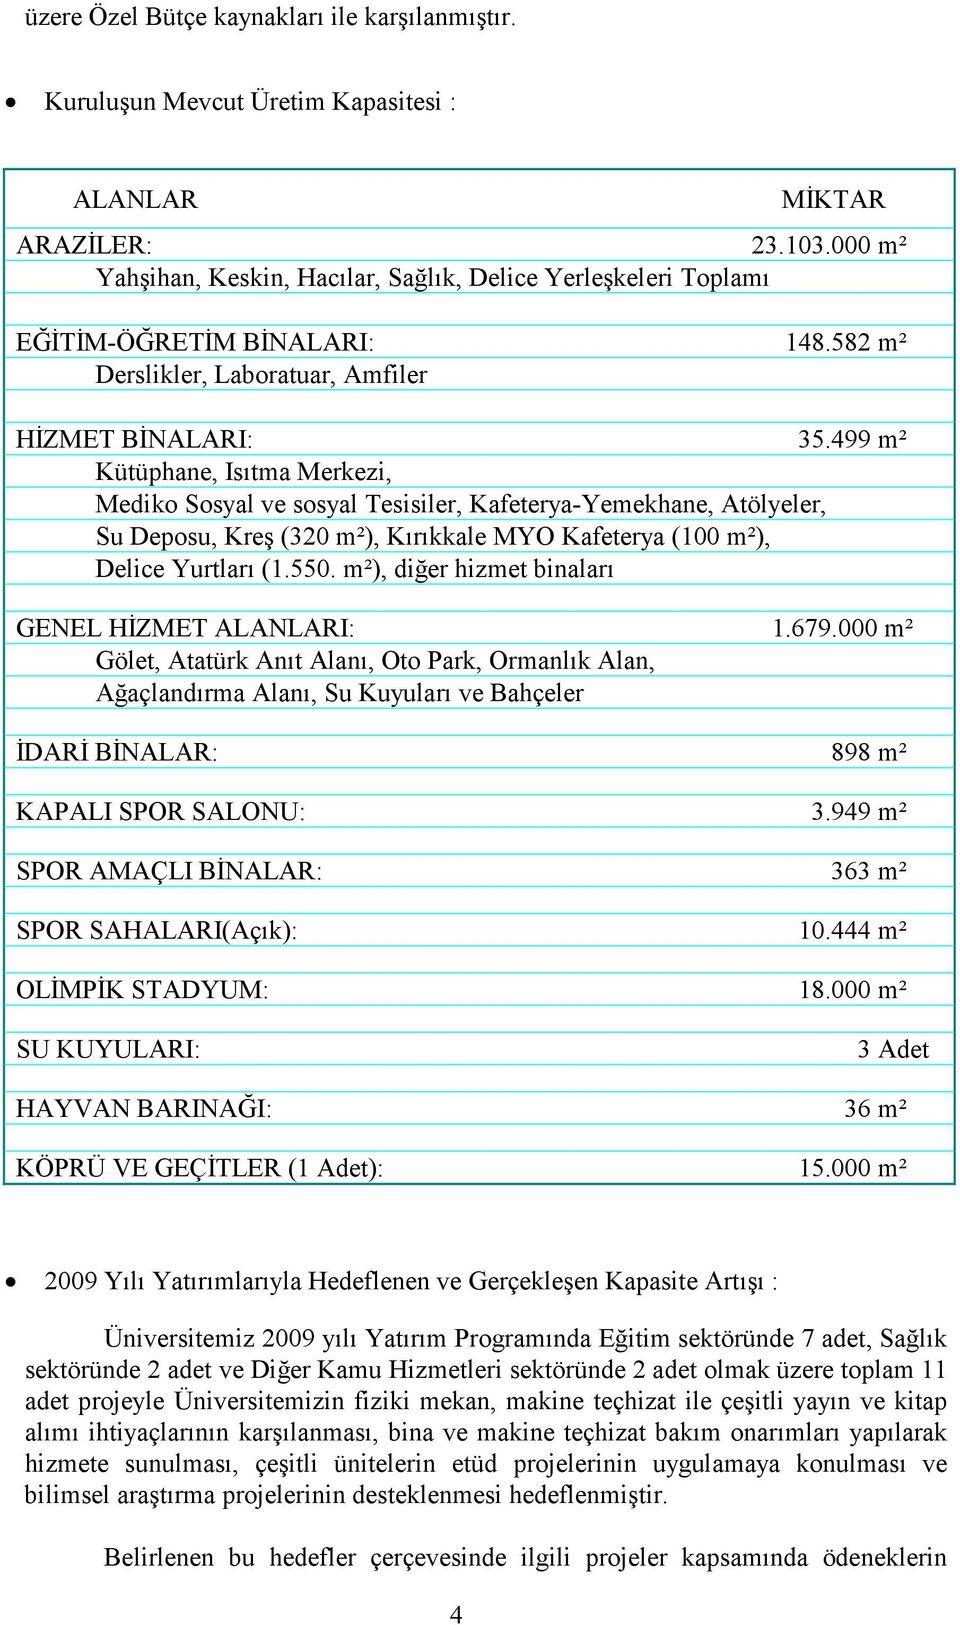 499 m² Kütüphane, Isıtma Merkezi, Mediko Sosyal ve sosyal Tesisiler, Kafeterya-Yemekhane, Atölyeler, Su Deposu, Kreş (320 m²), Kırıkkale MYO Kafeterya (100 m²), Delice Yurtları (1.550.